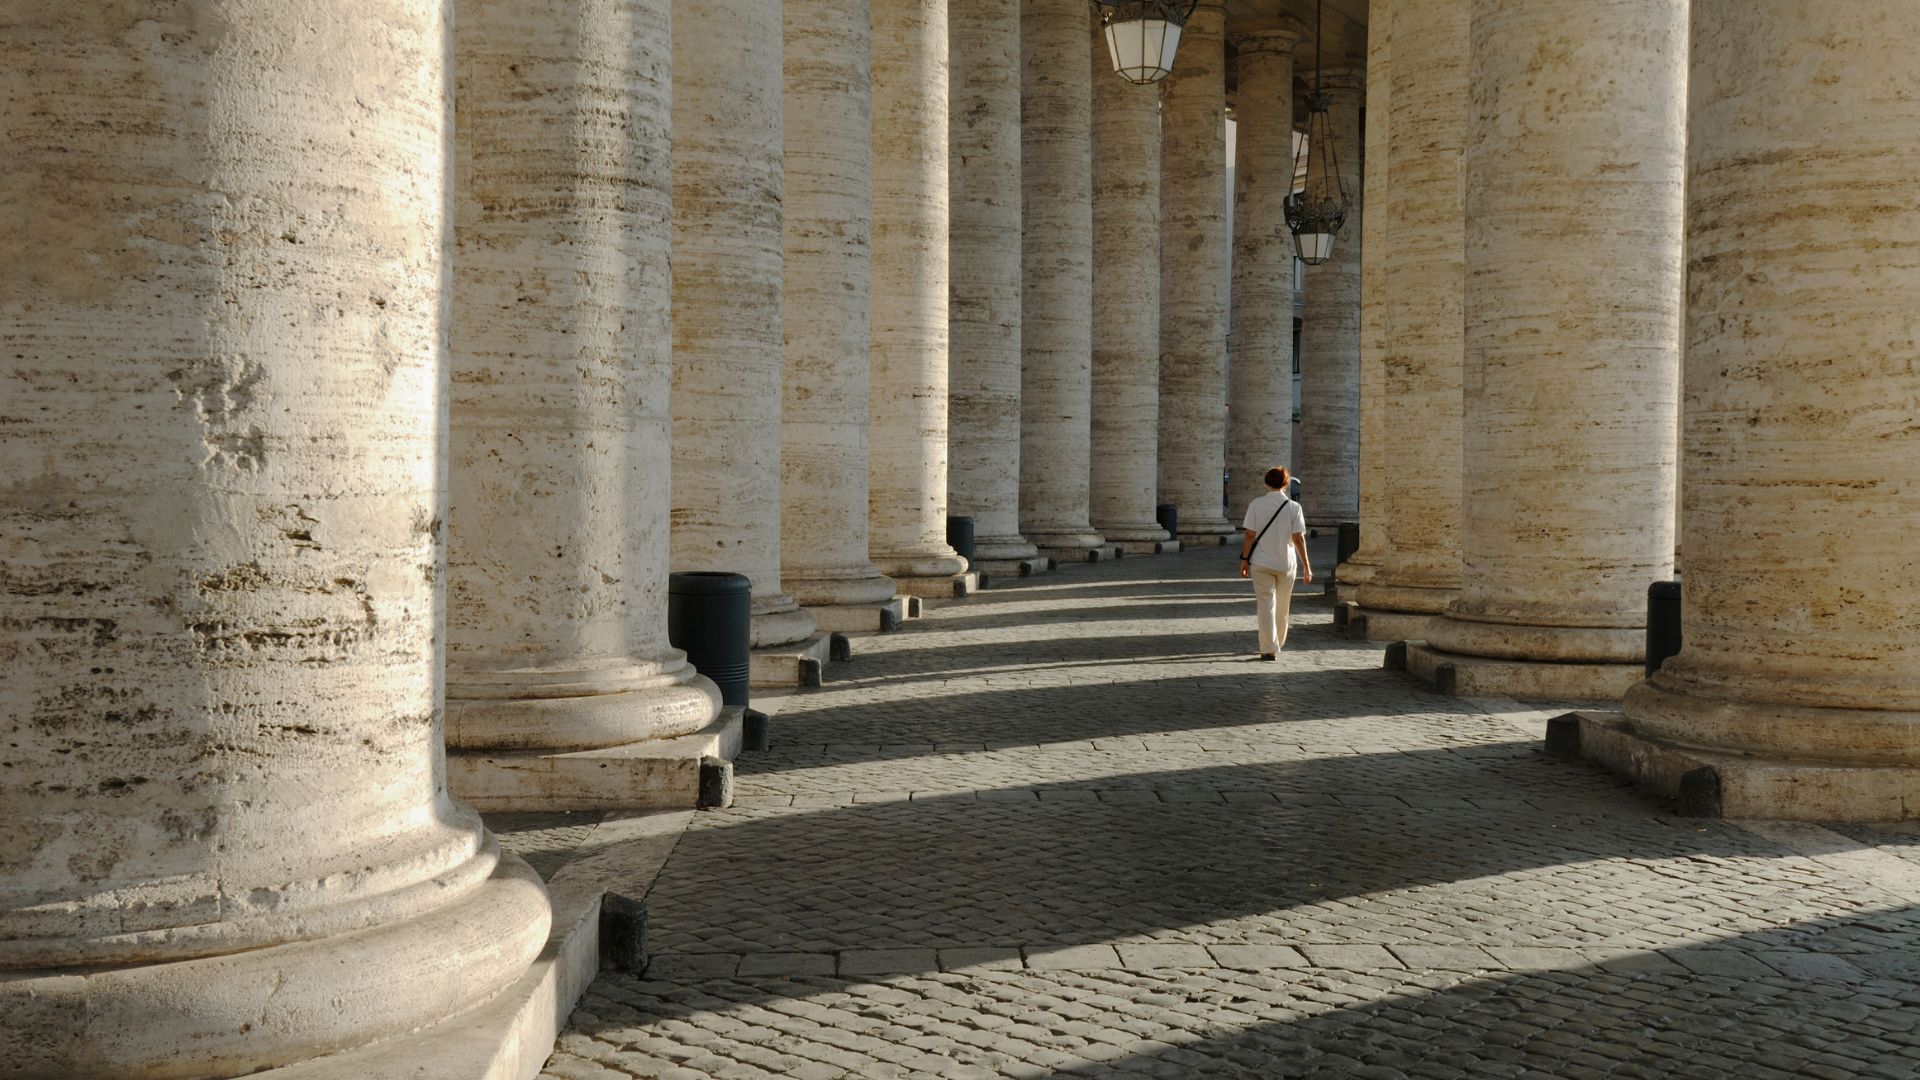 Plac 艣w. Piotra - TOP 10 miejsc do zobaczenia w Rzymie